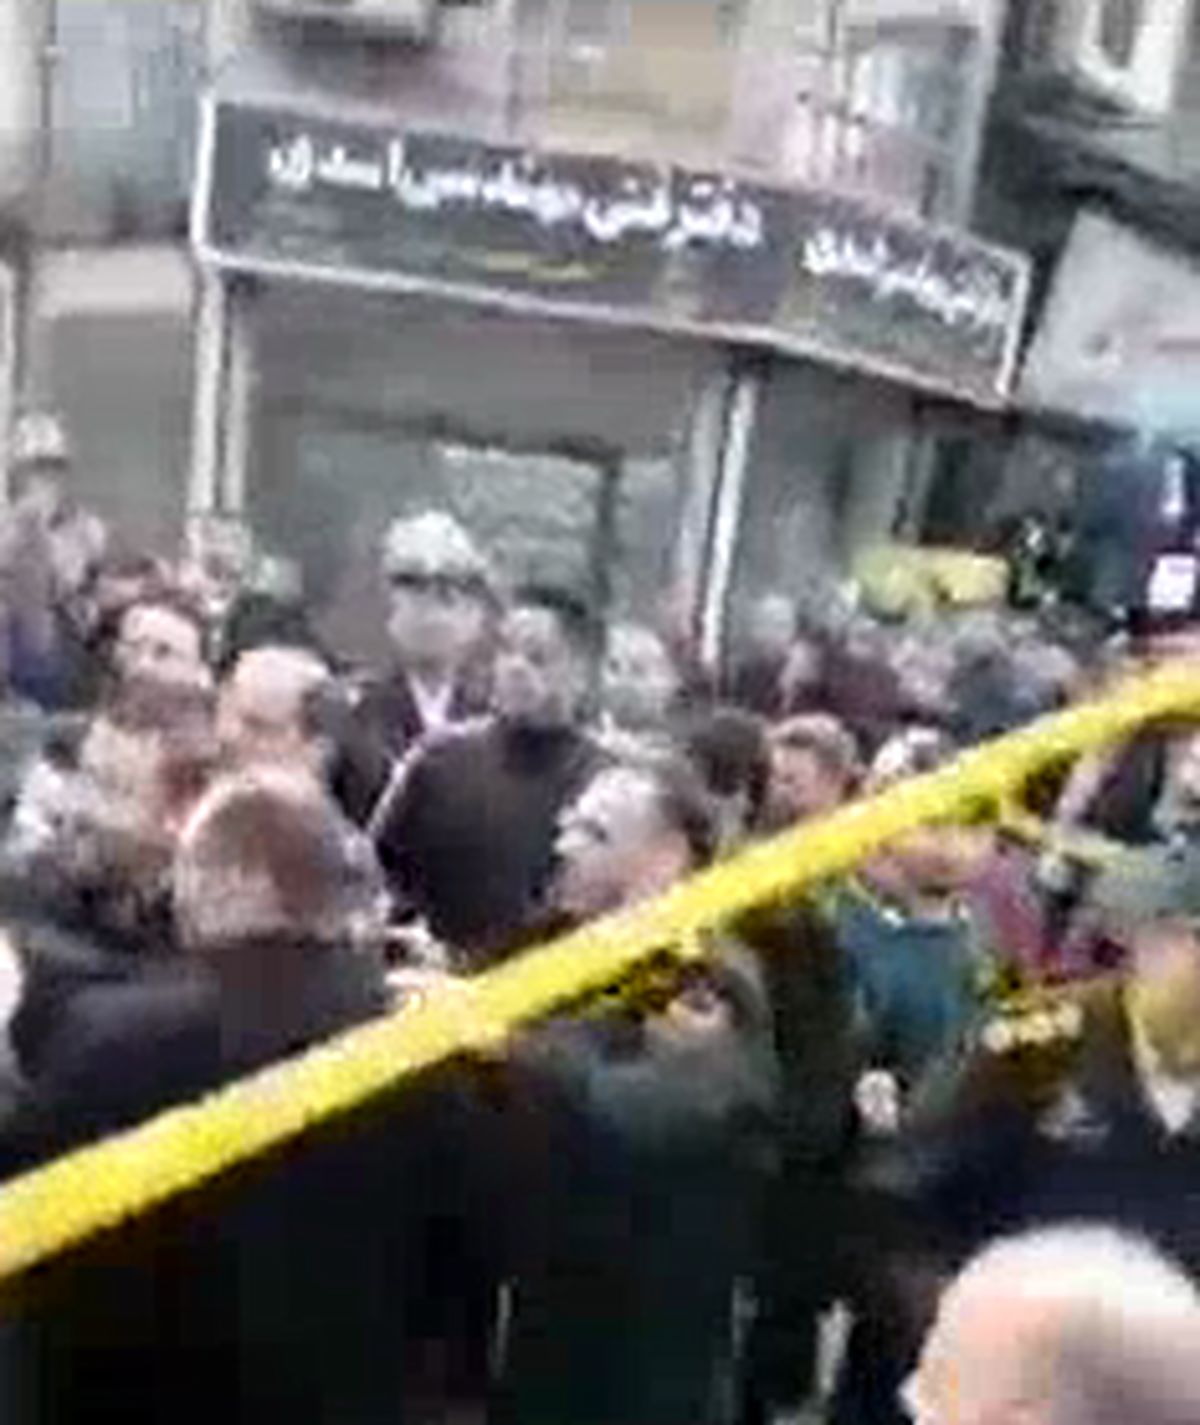 لحظه دیگری از دستگیری سارق مسلح در رشت و انتقال به نیروی انتظامی